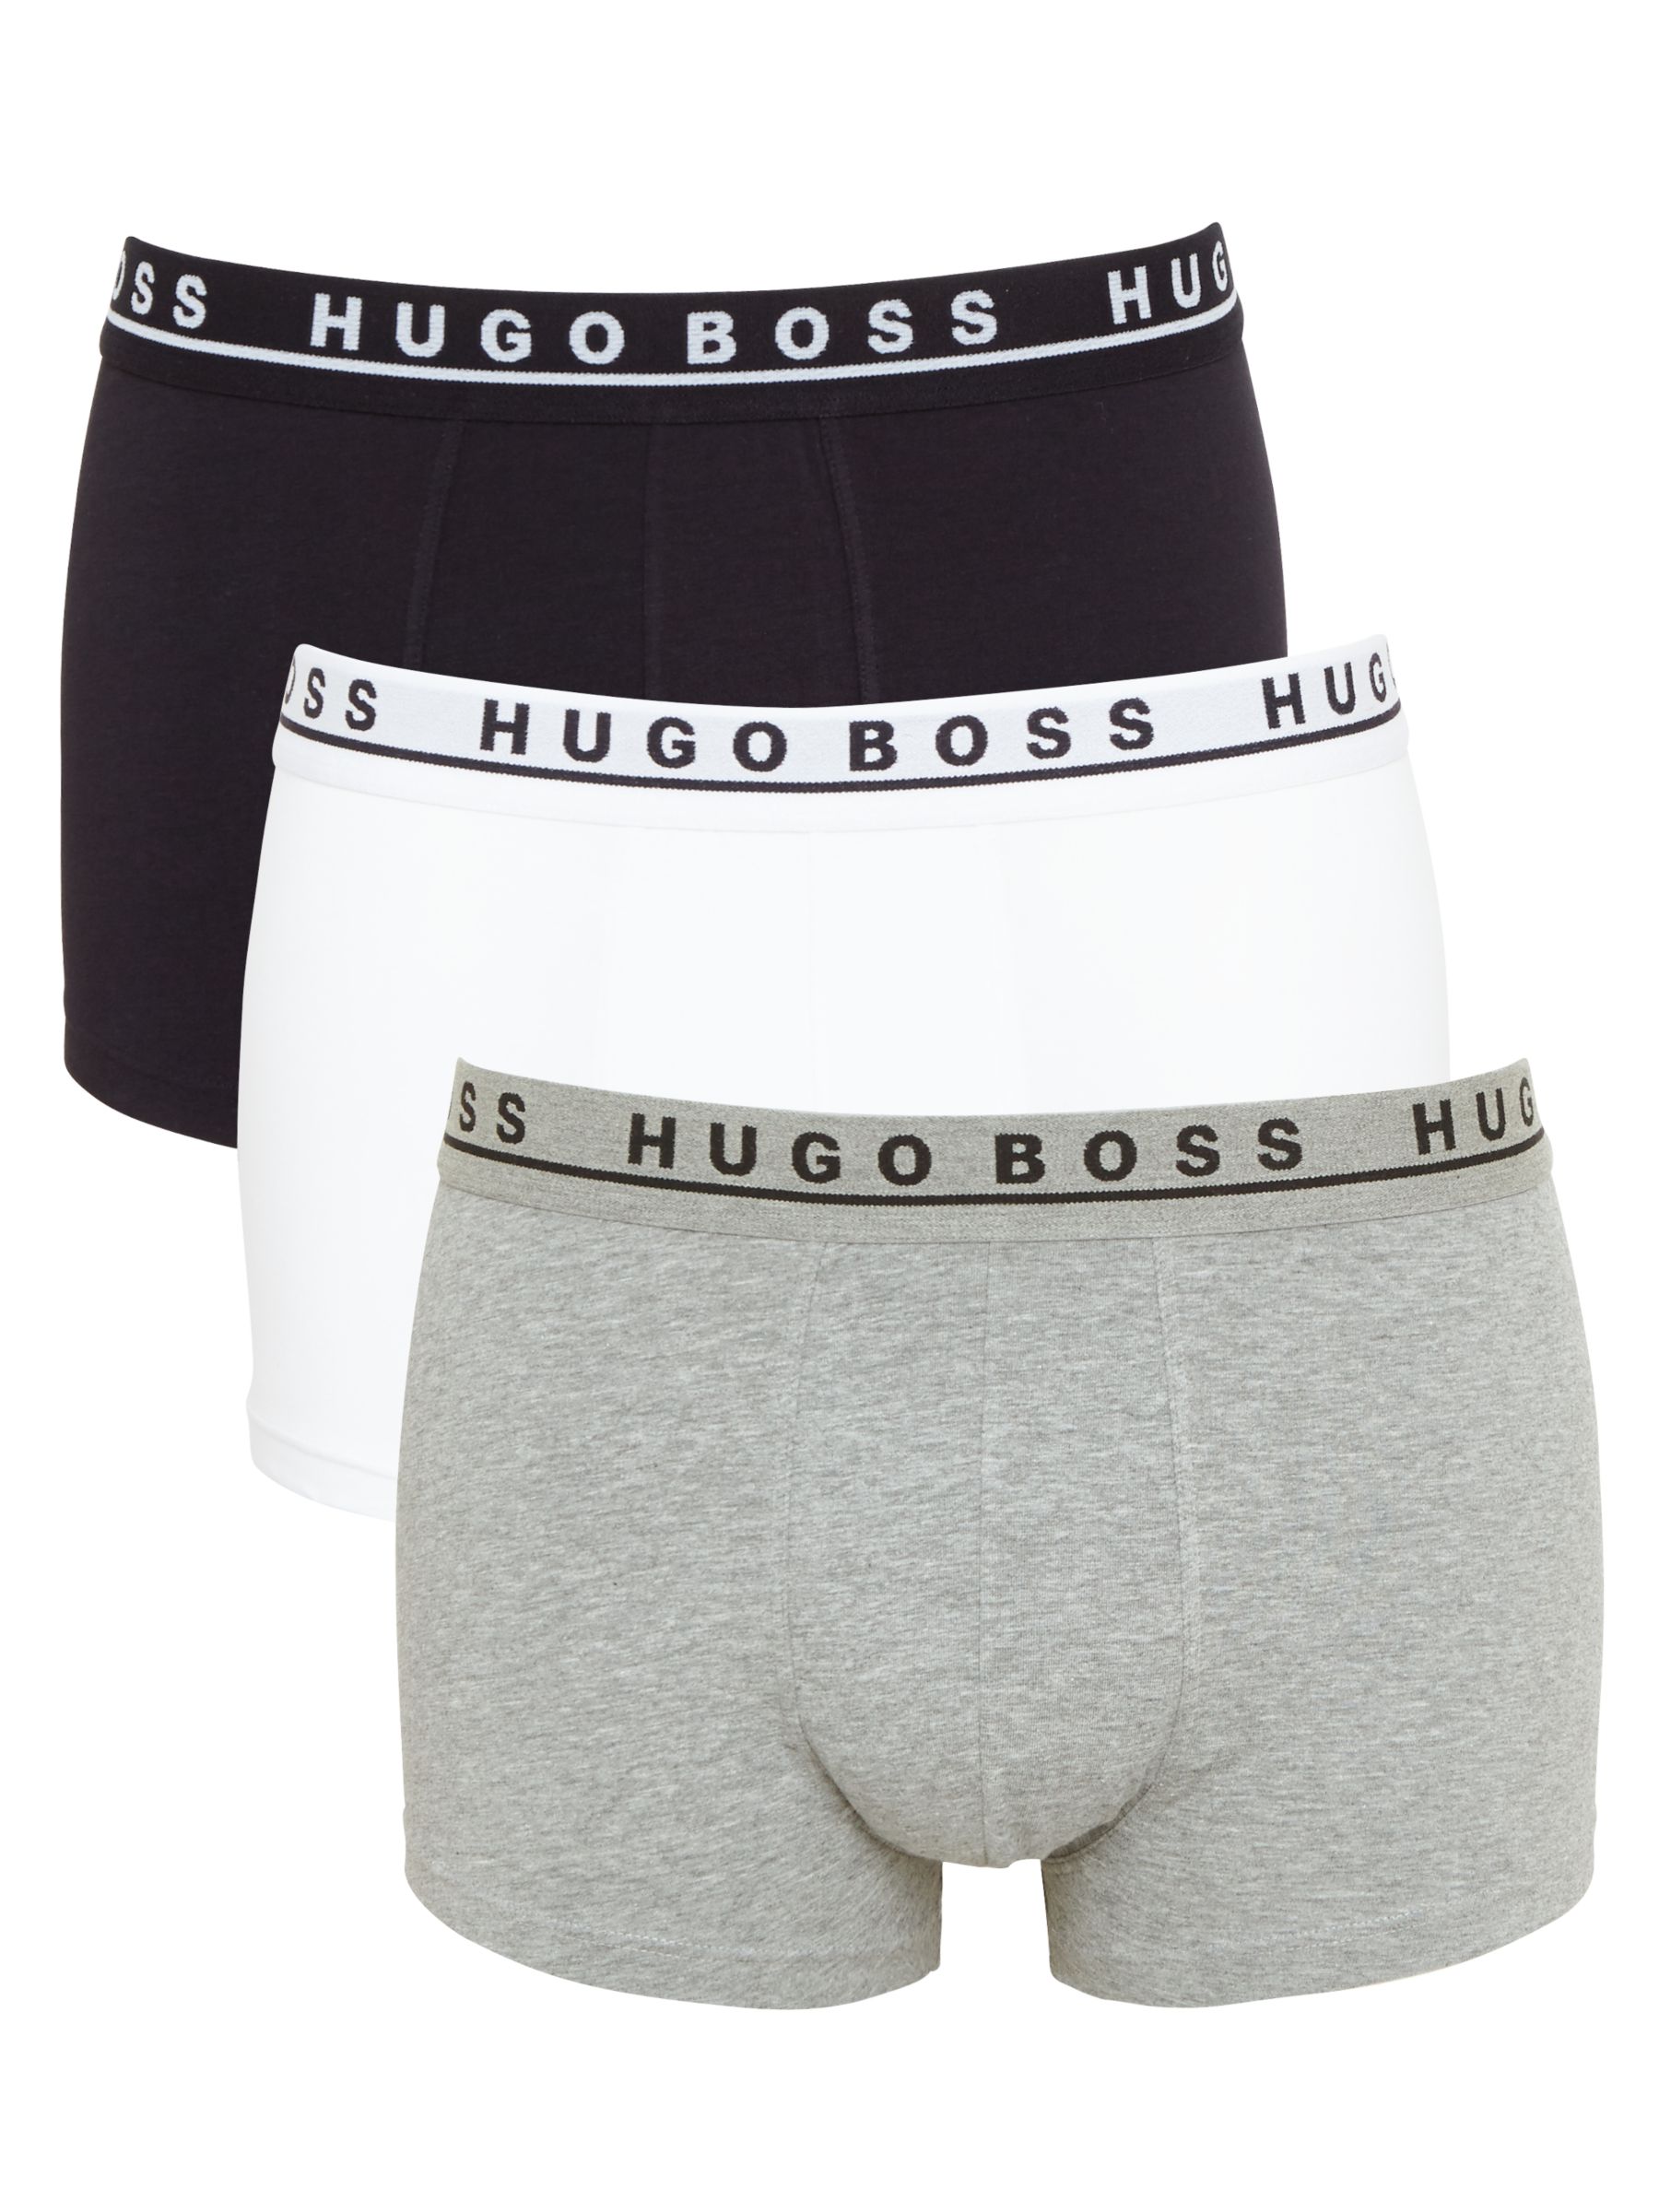 hugo boss underwear uk